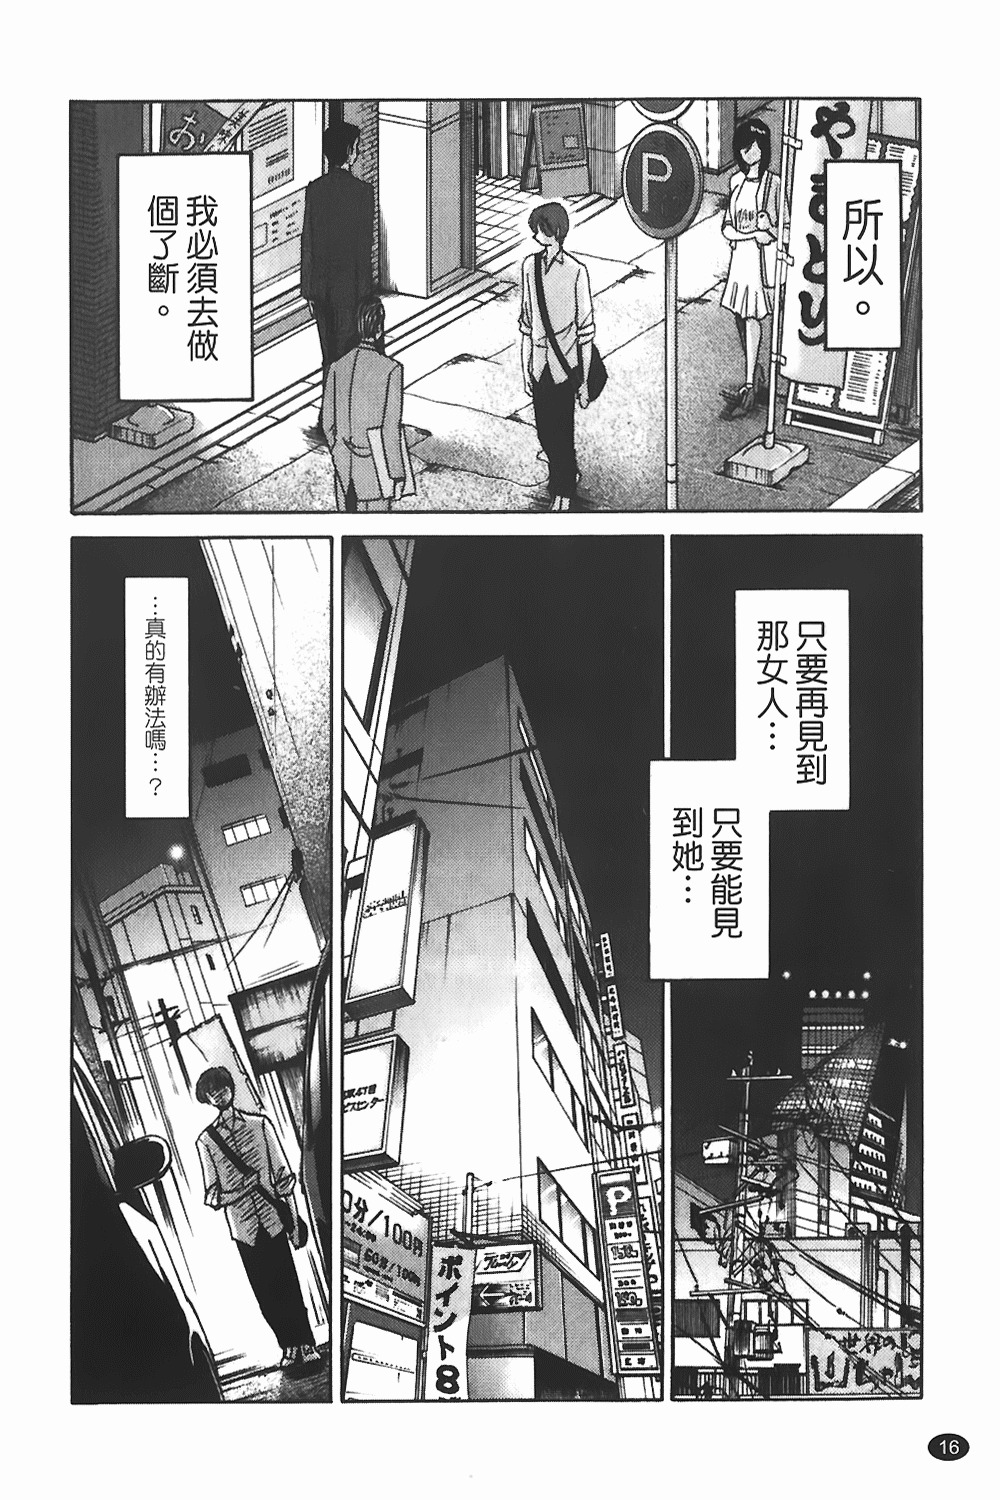 [TsuyaTsuya] Monokage no Iris 1 | 陰影中的伊利斯 1 [Chinese] page 13 full